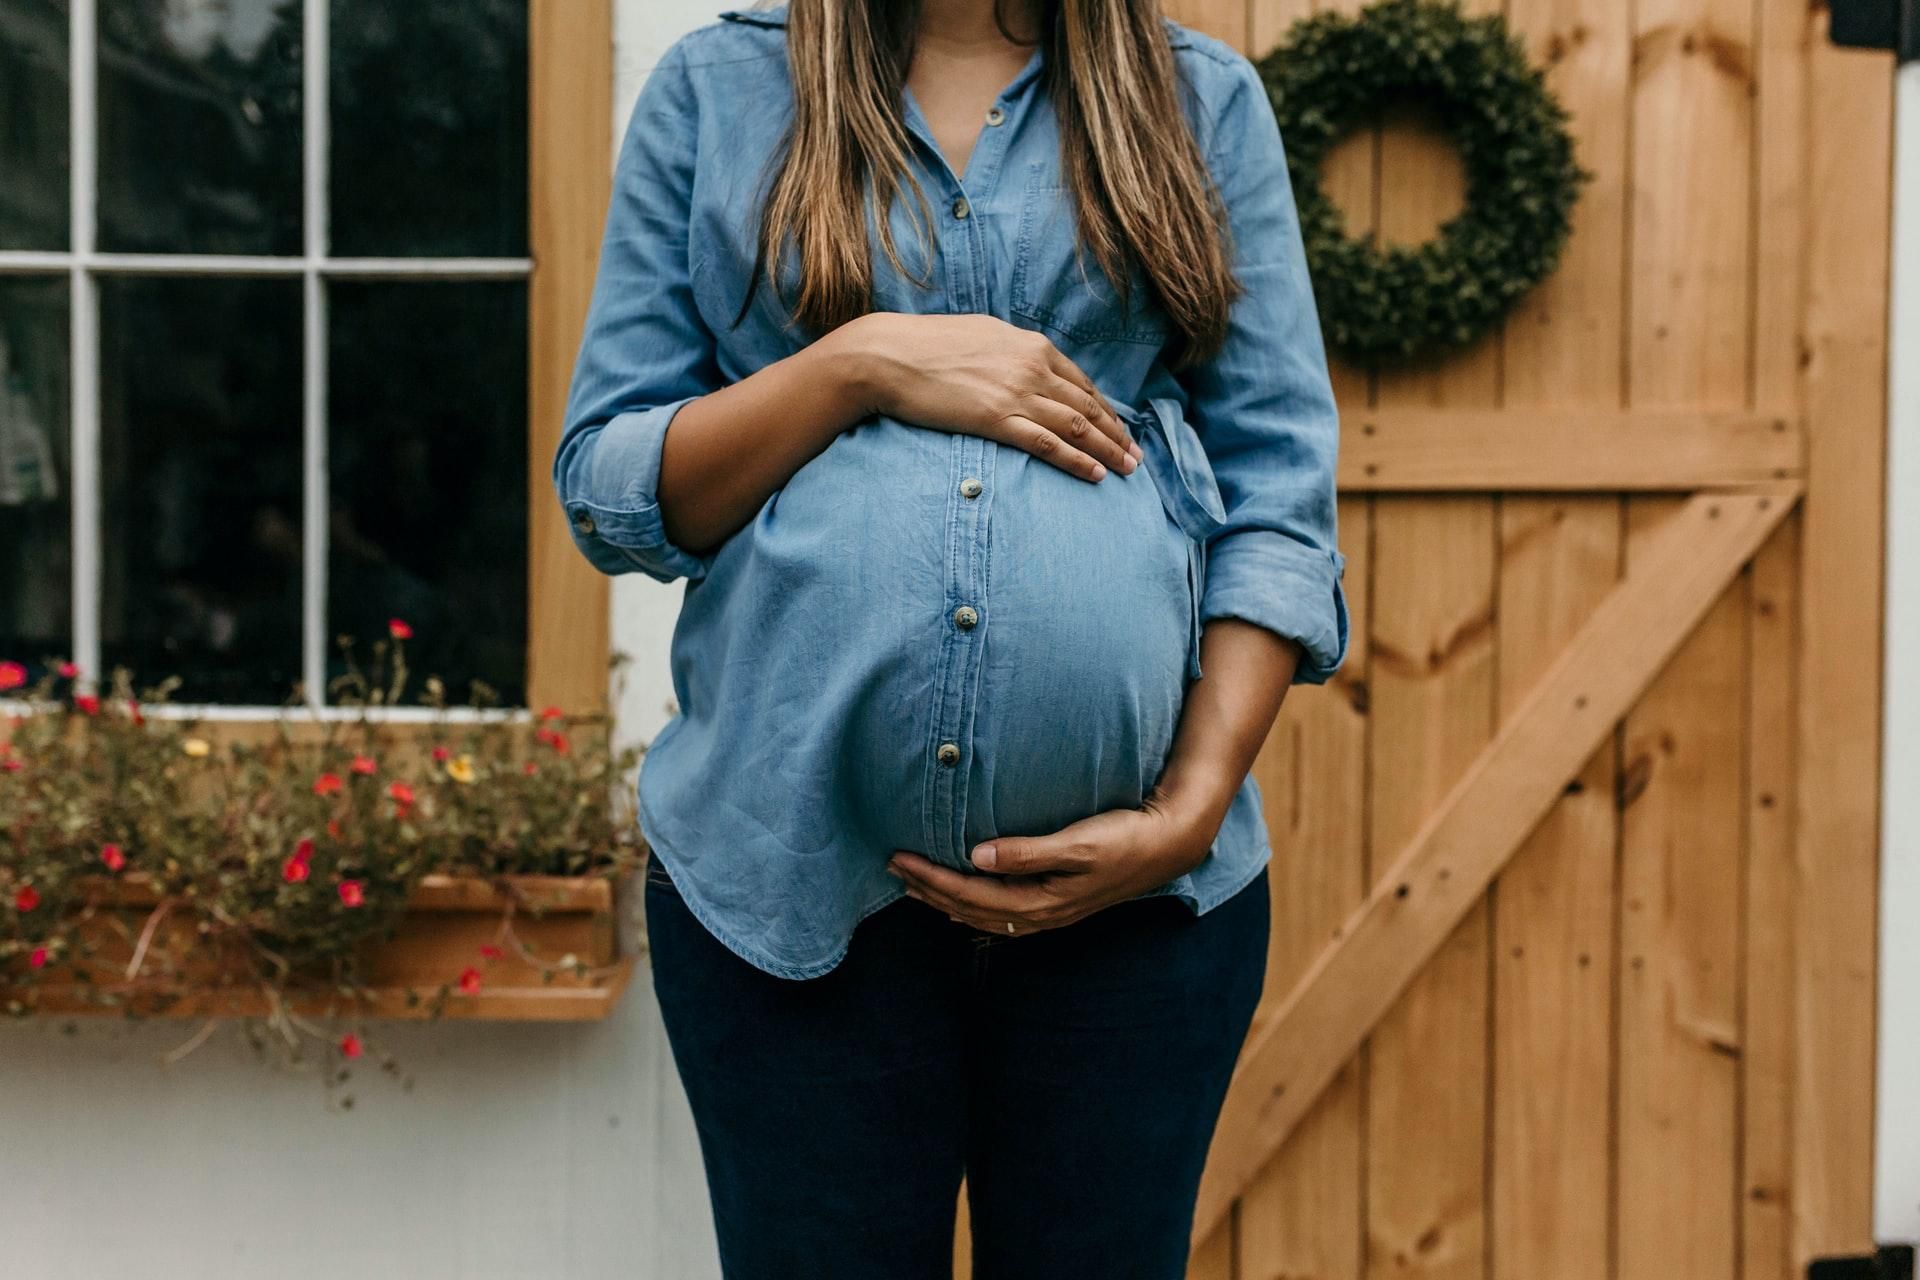 Эмоциональное состояние беременной влияет на риск осложнений во время родов